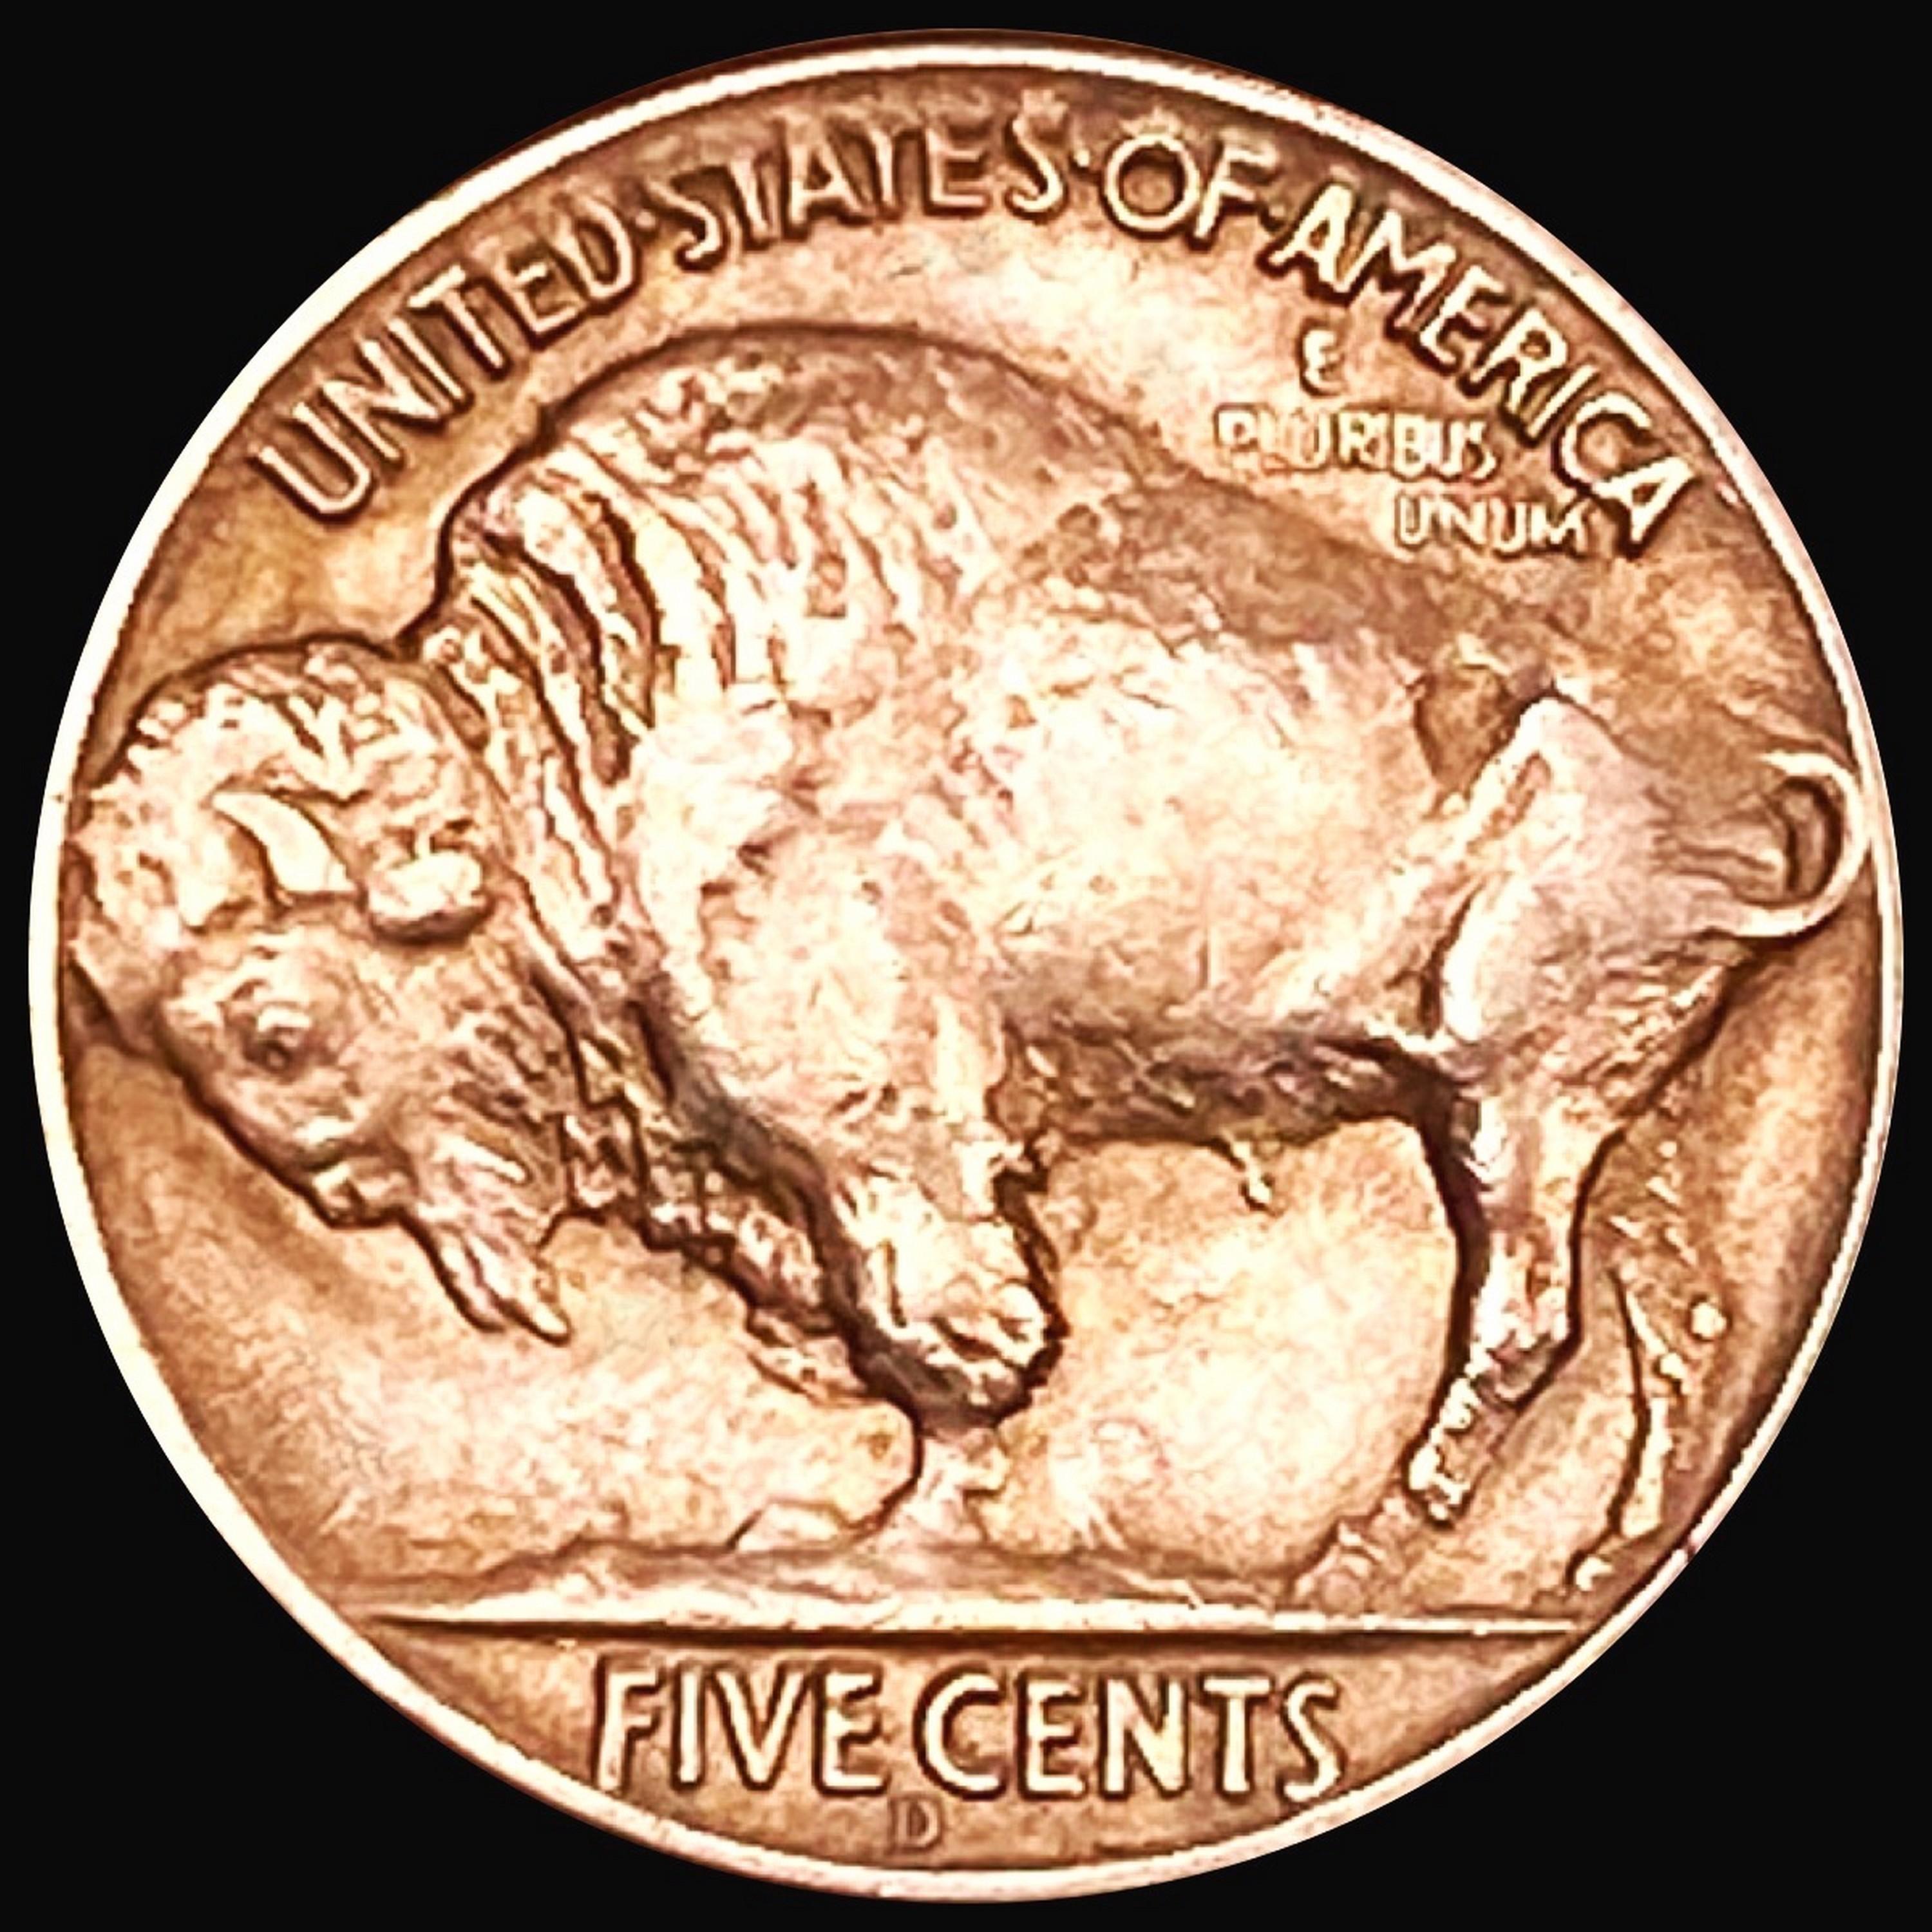 1937-D 3 Leg Buffalo Nickel UNCIRCULATED